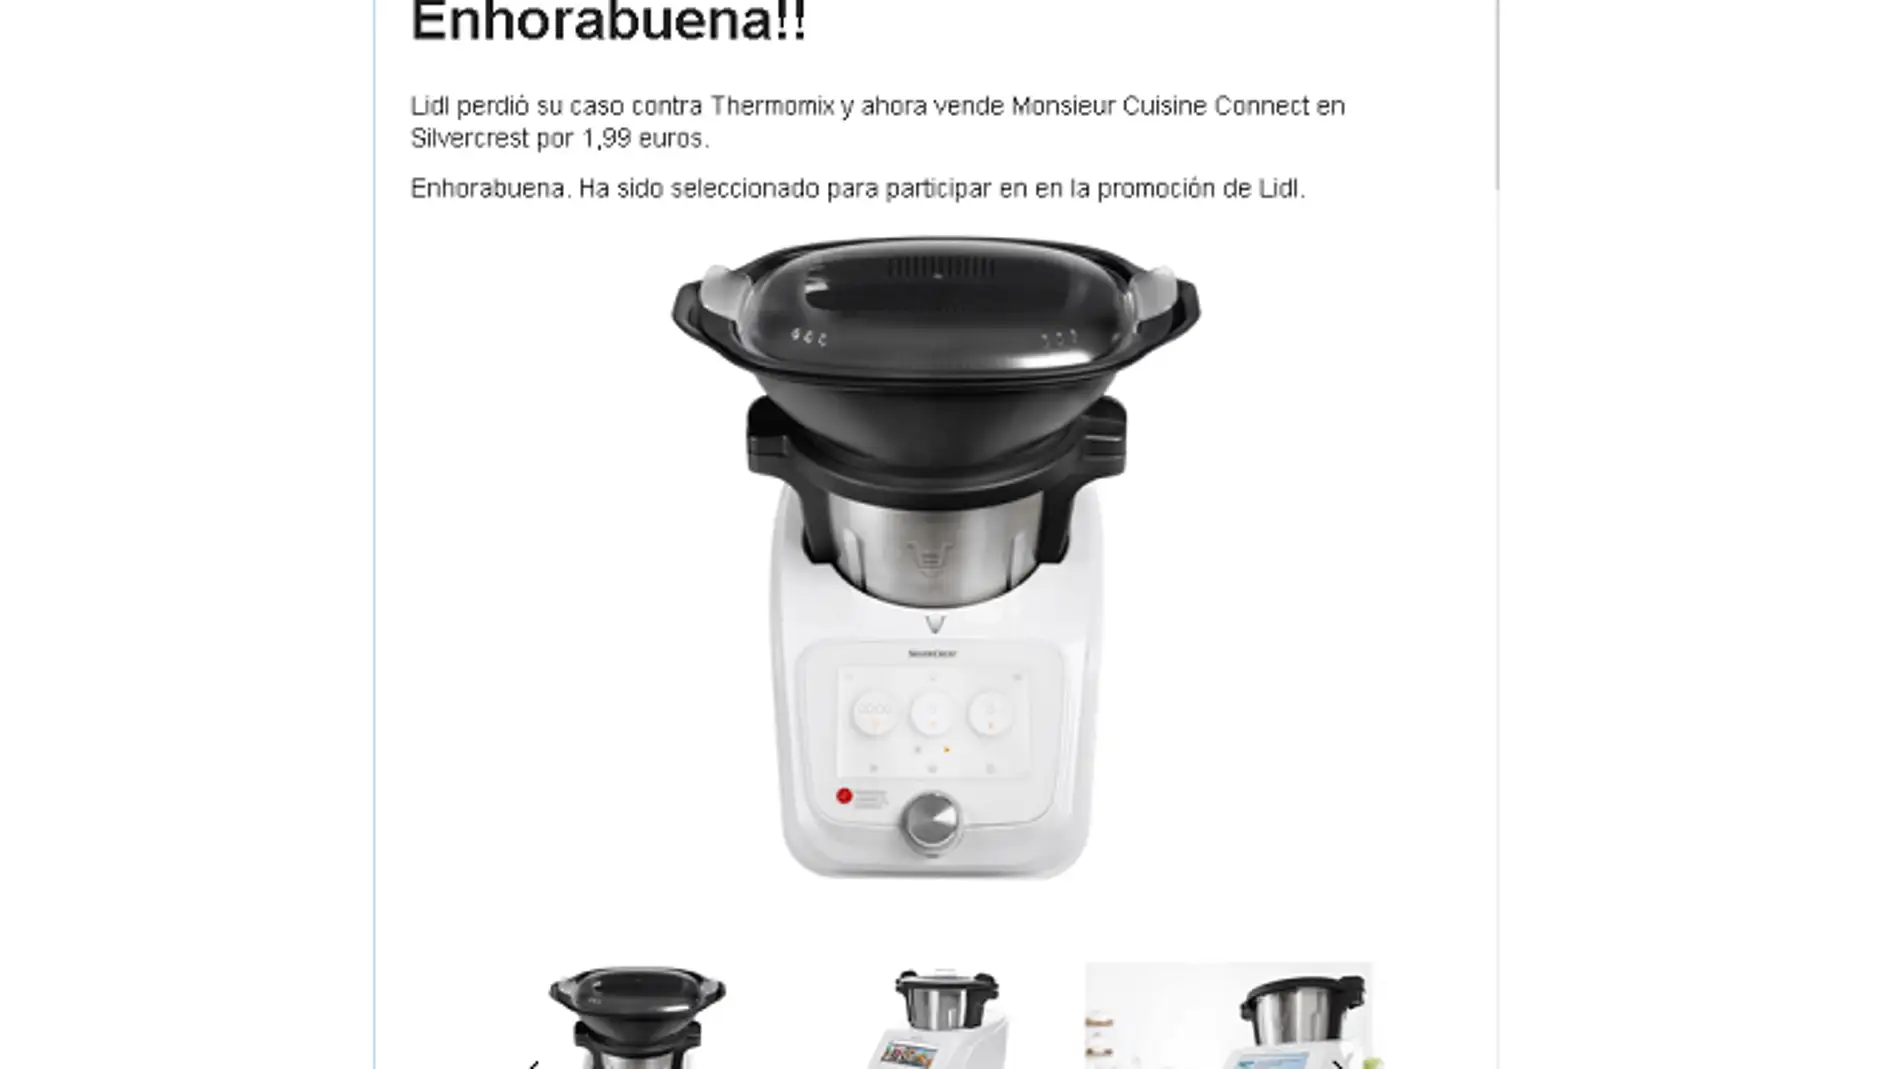 Estafa en 'Black Friday': cuidado con la oferta del robot de cocina de Lidl por 1,99 euros